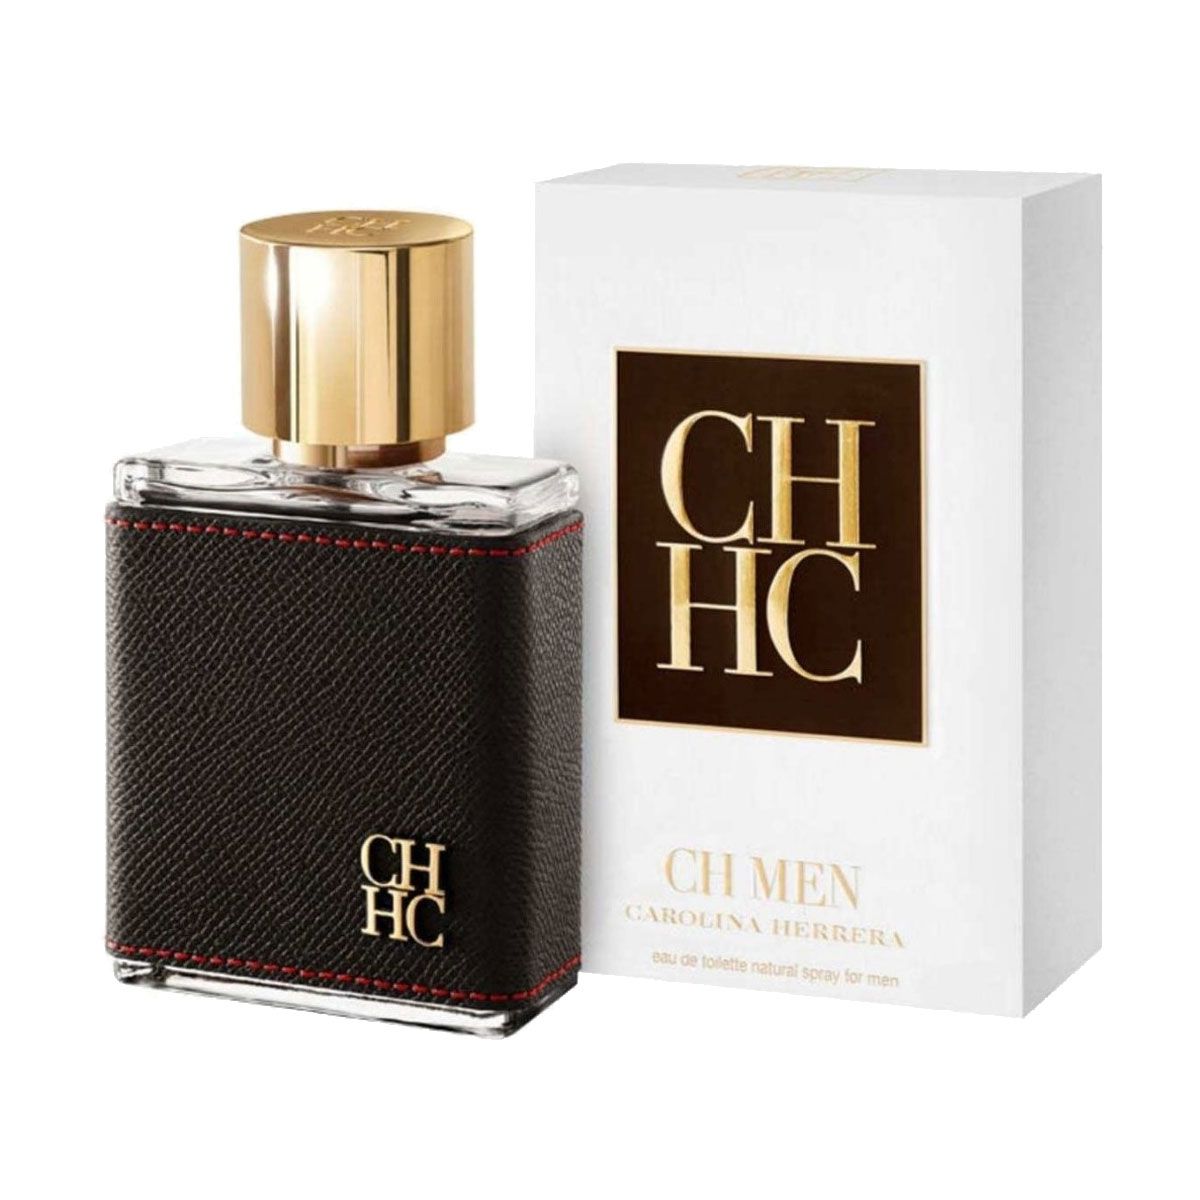 CH Men - Carolina Herrera Eau de Toilette - Perfume Masculino